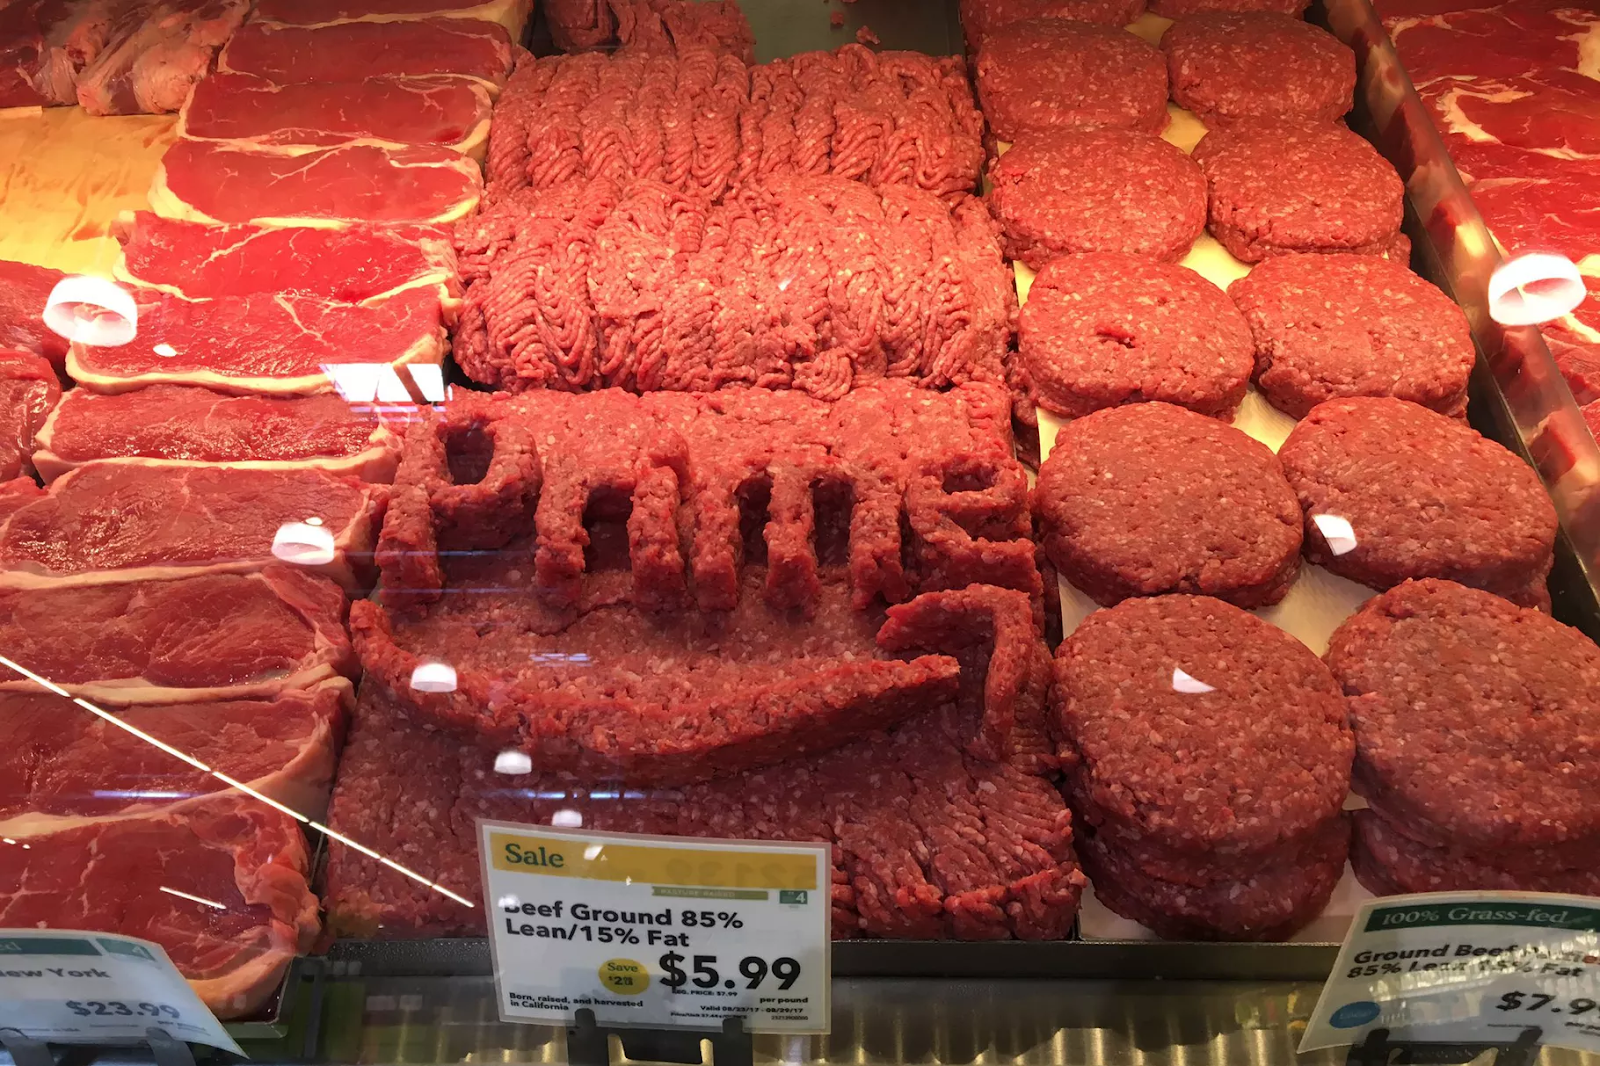 Amazon Prime beef.